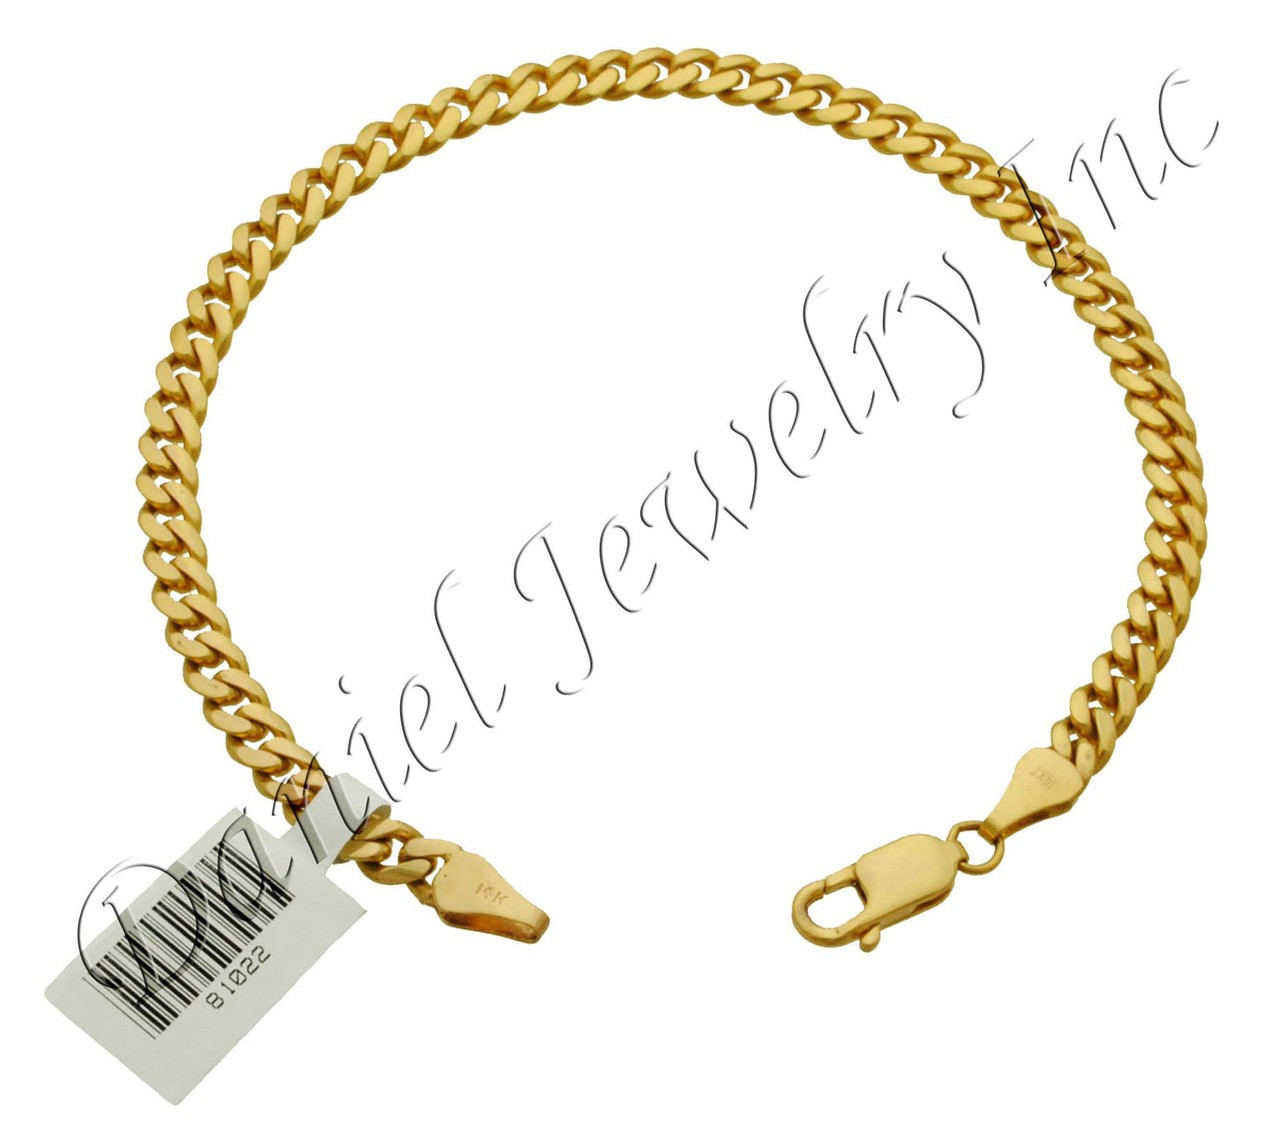 Details about   4mm Gold Premium Miami Cuban Mens Bracelet 